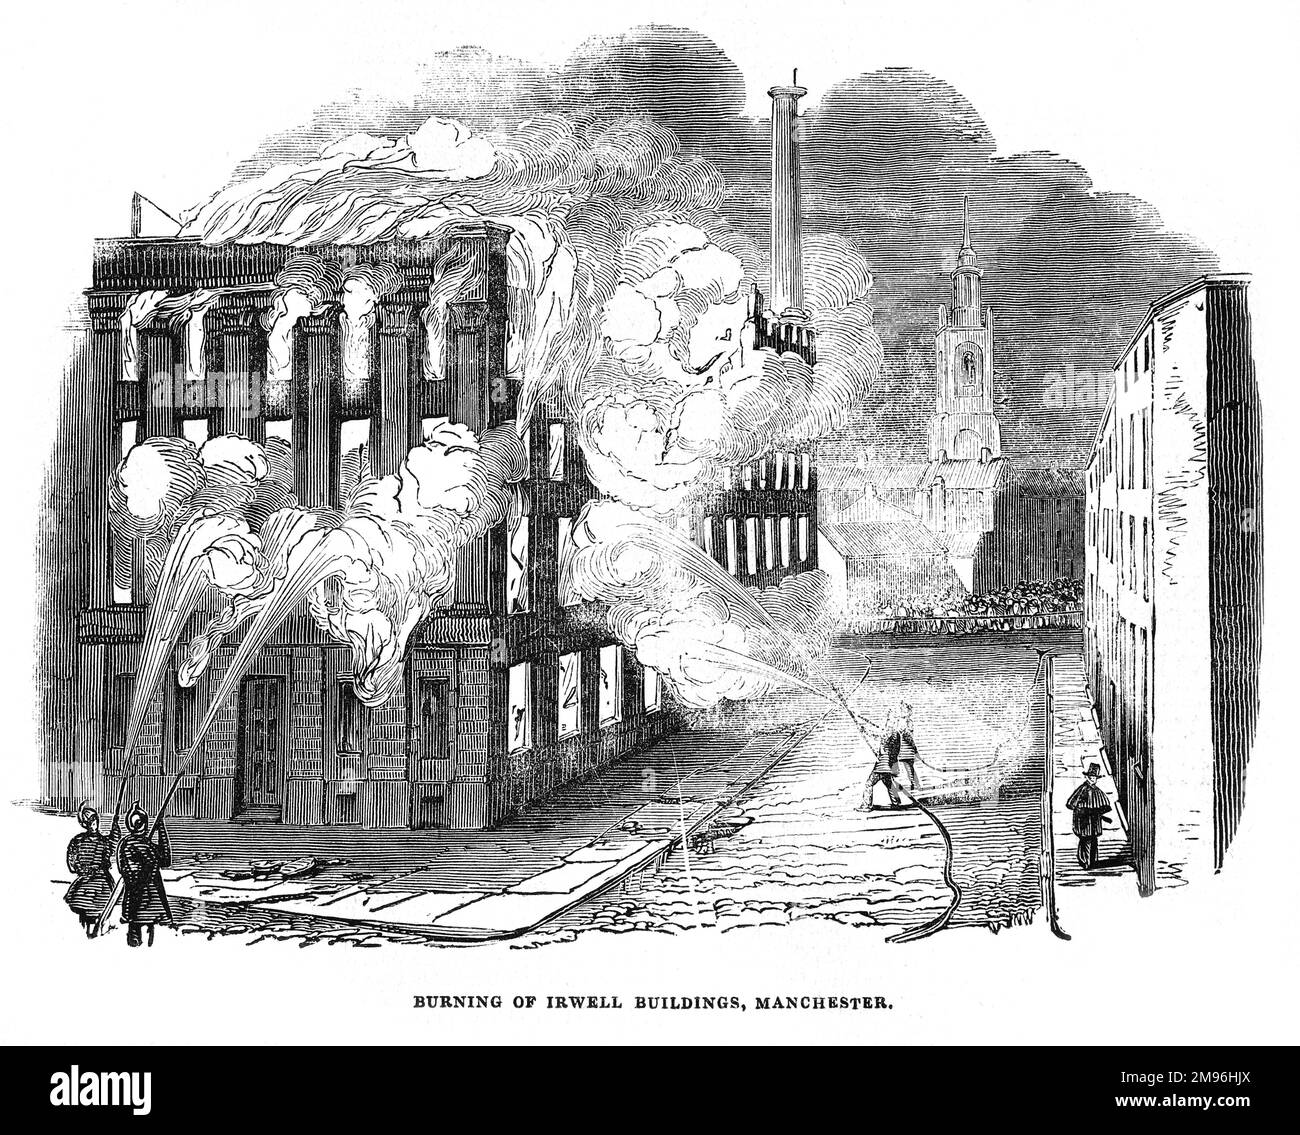 Burning of the Irwell Building, Manchester; Illustrazione in bianco e nero del London Illustrated News; Agosto 1844. Foto Stock